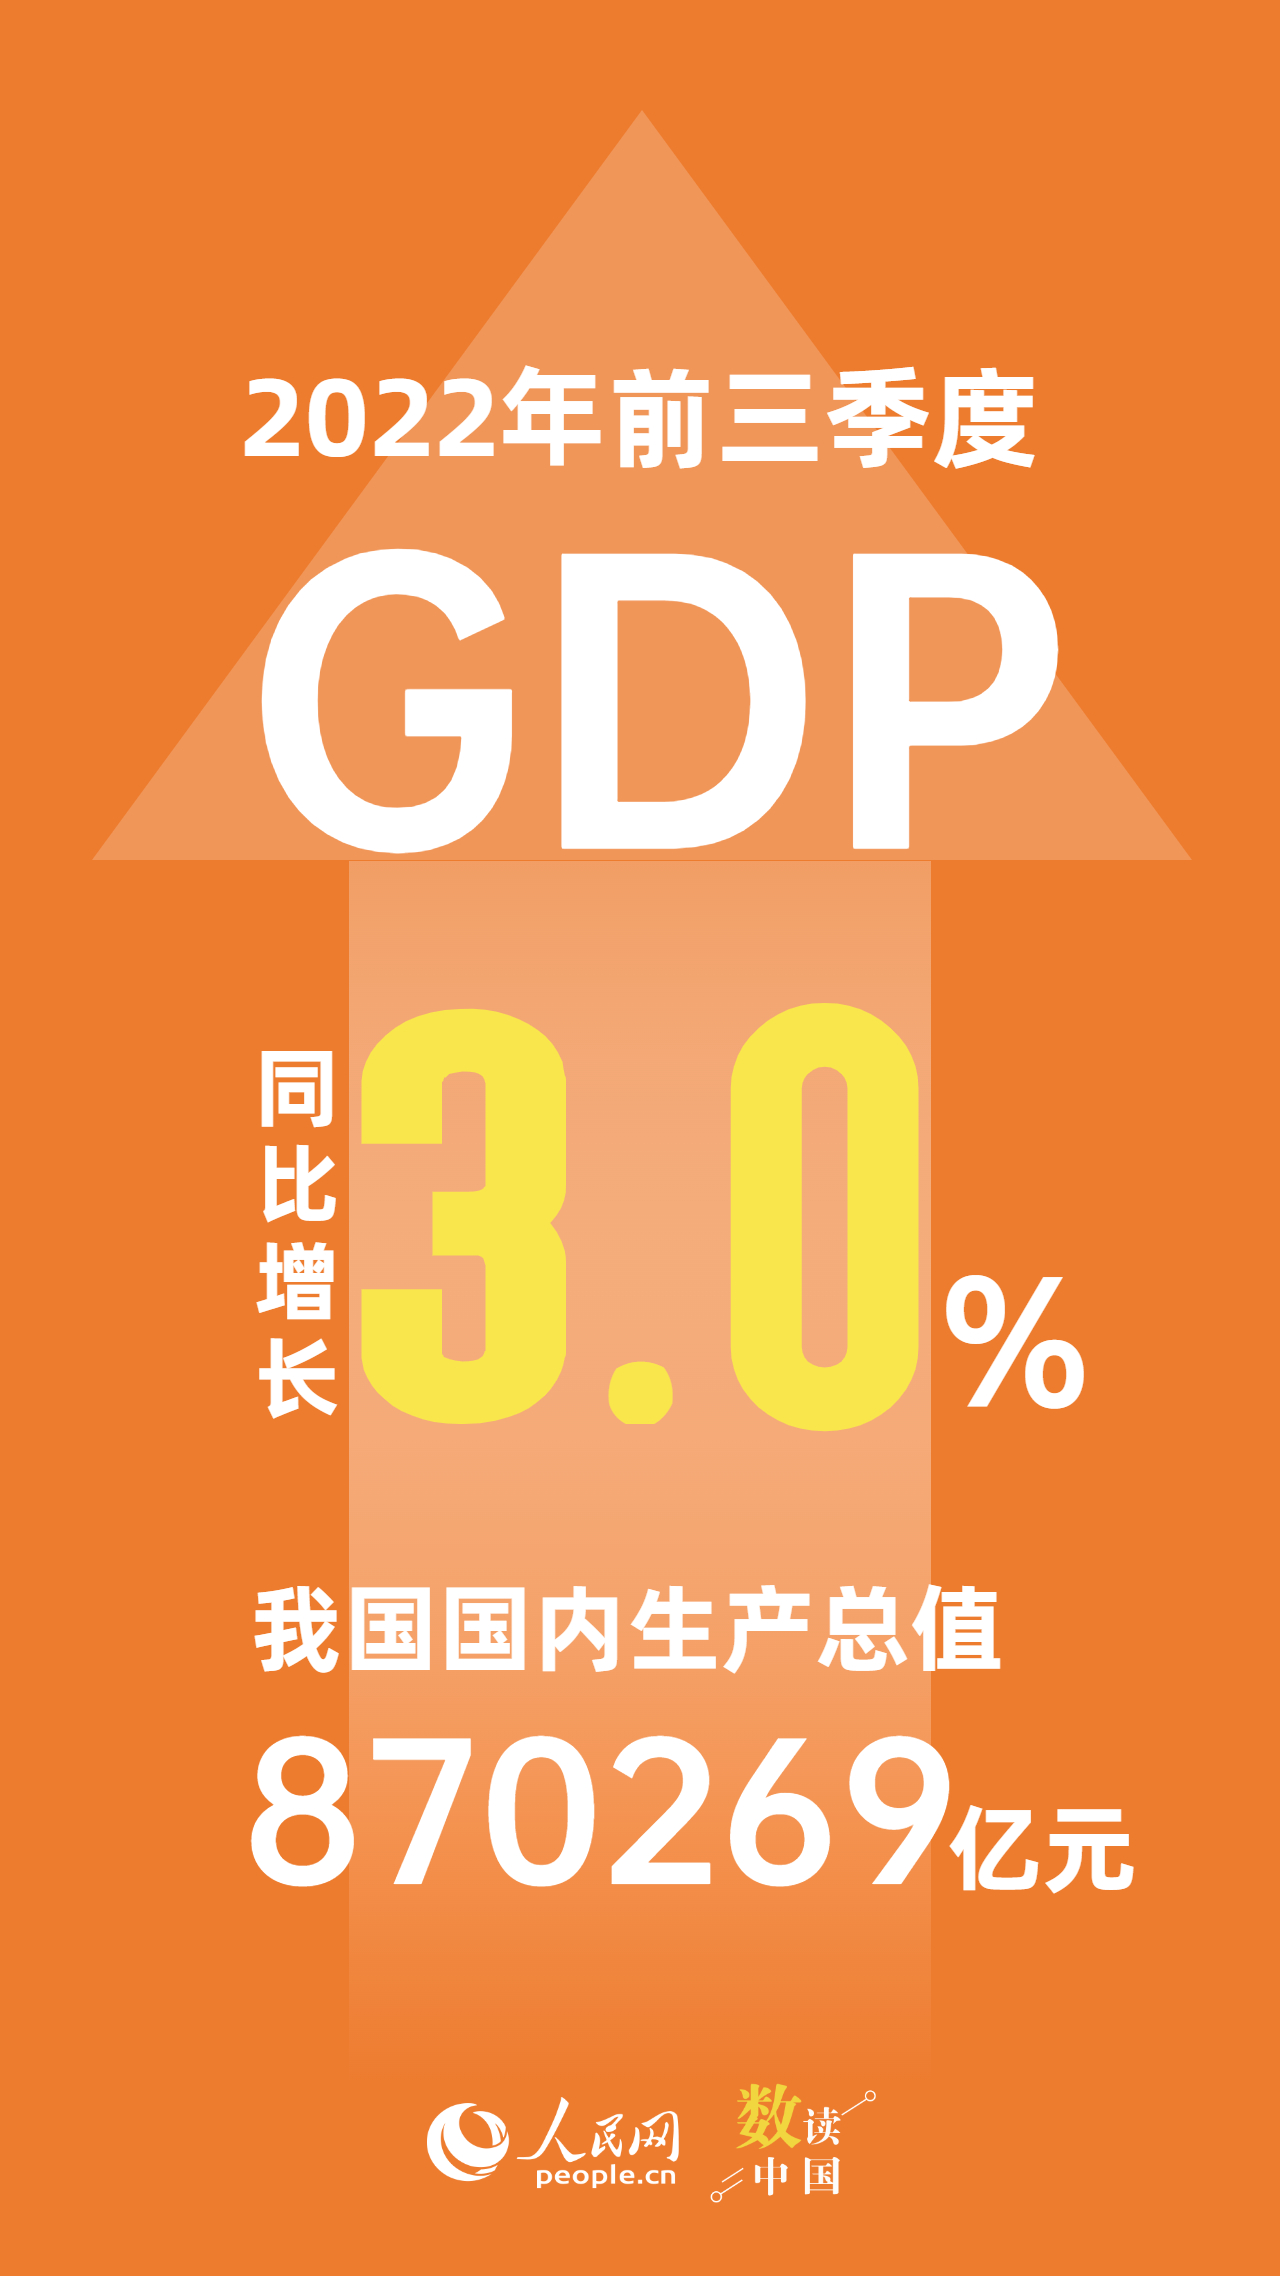 2022年前三季度我國GDP增長3.0% 國民經濟恢復向好